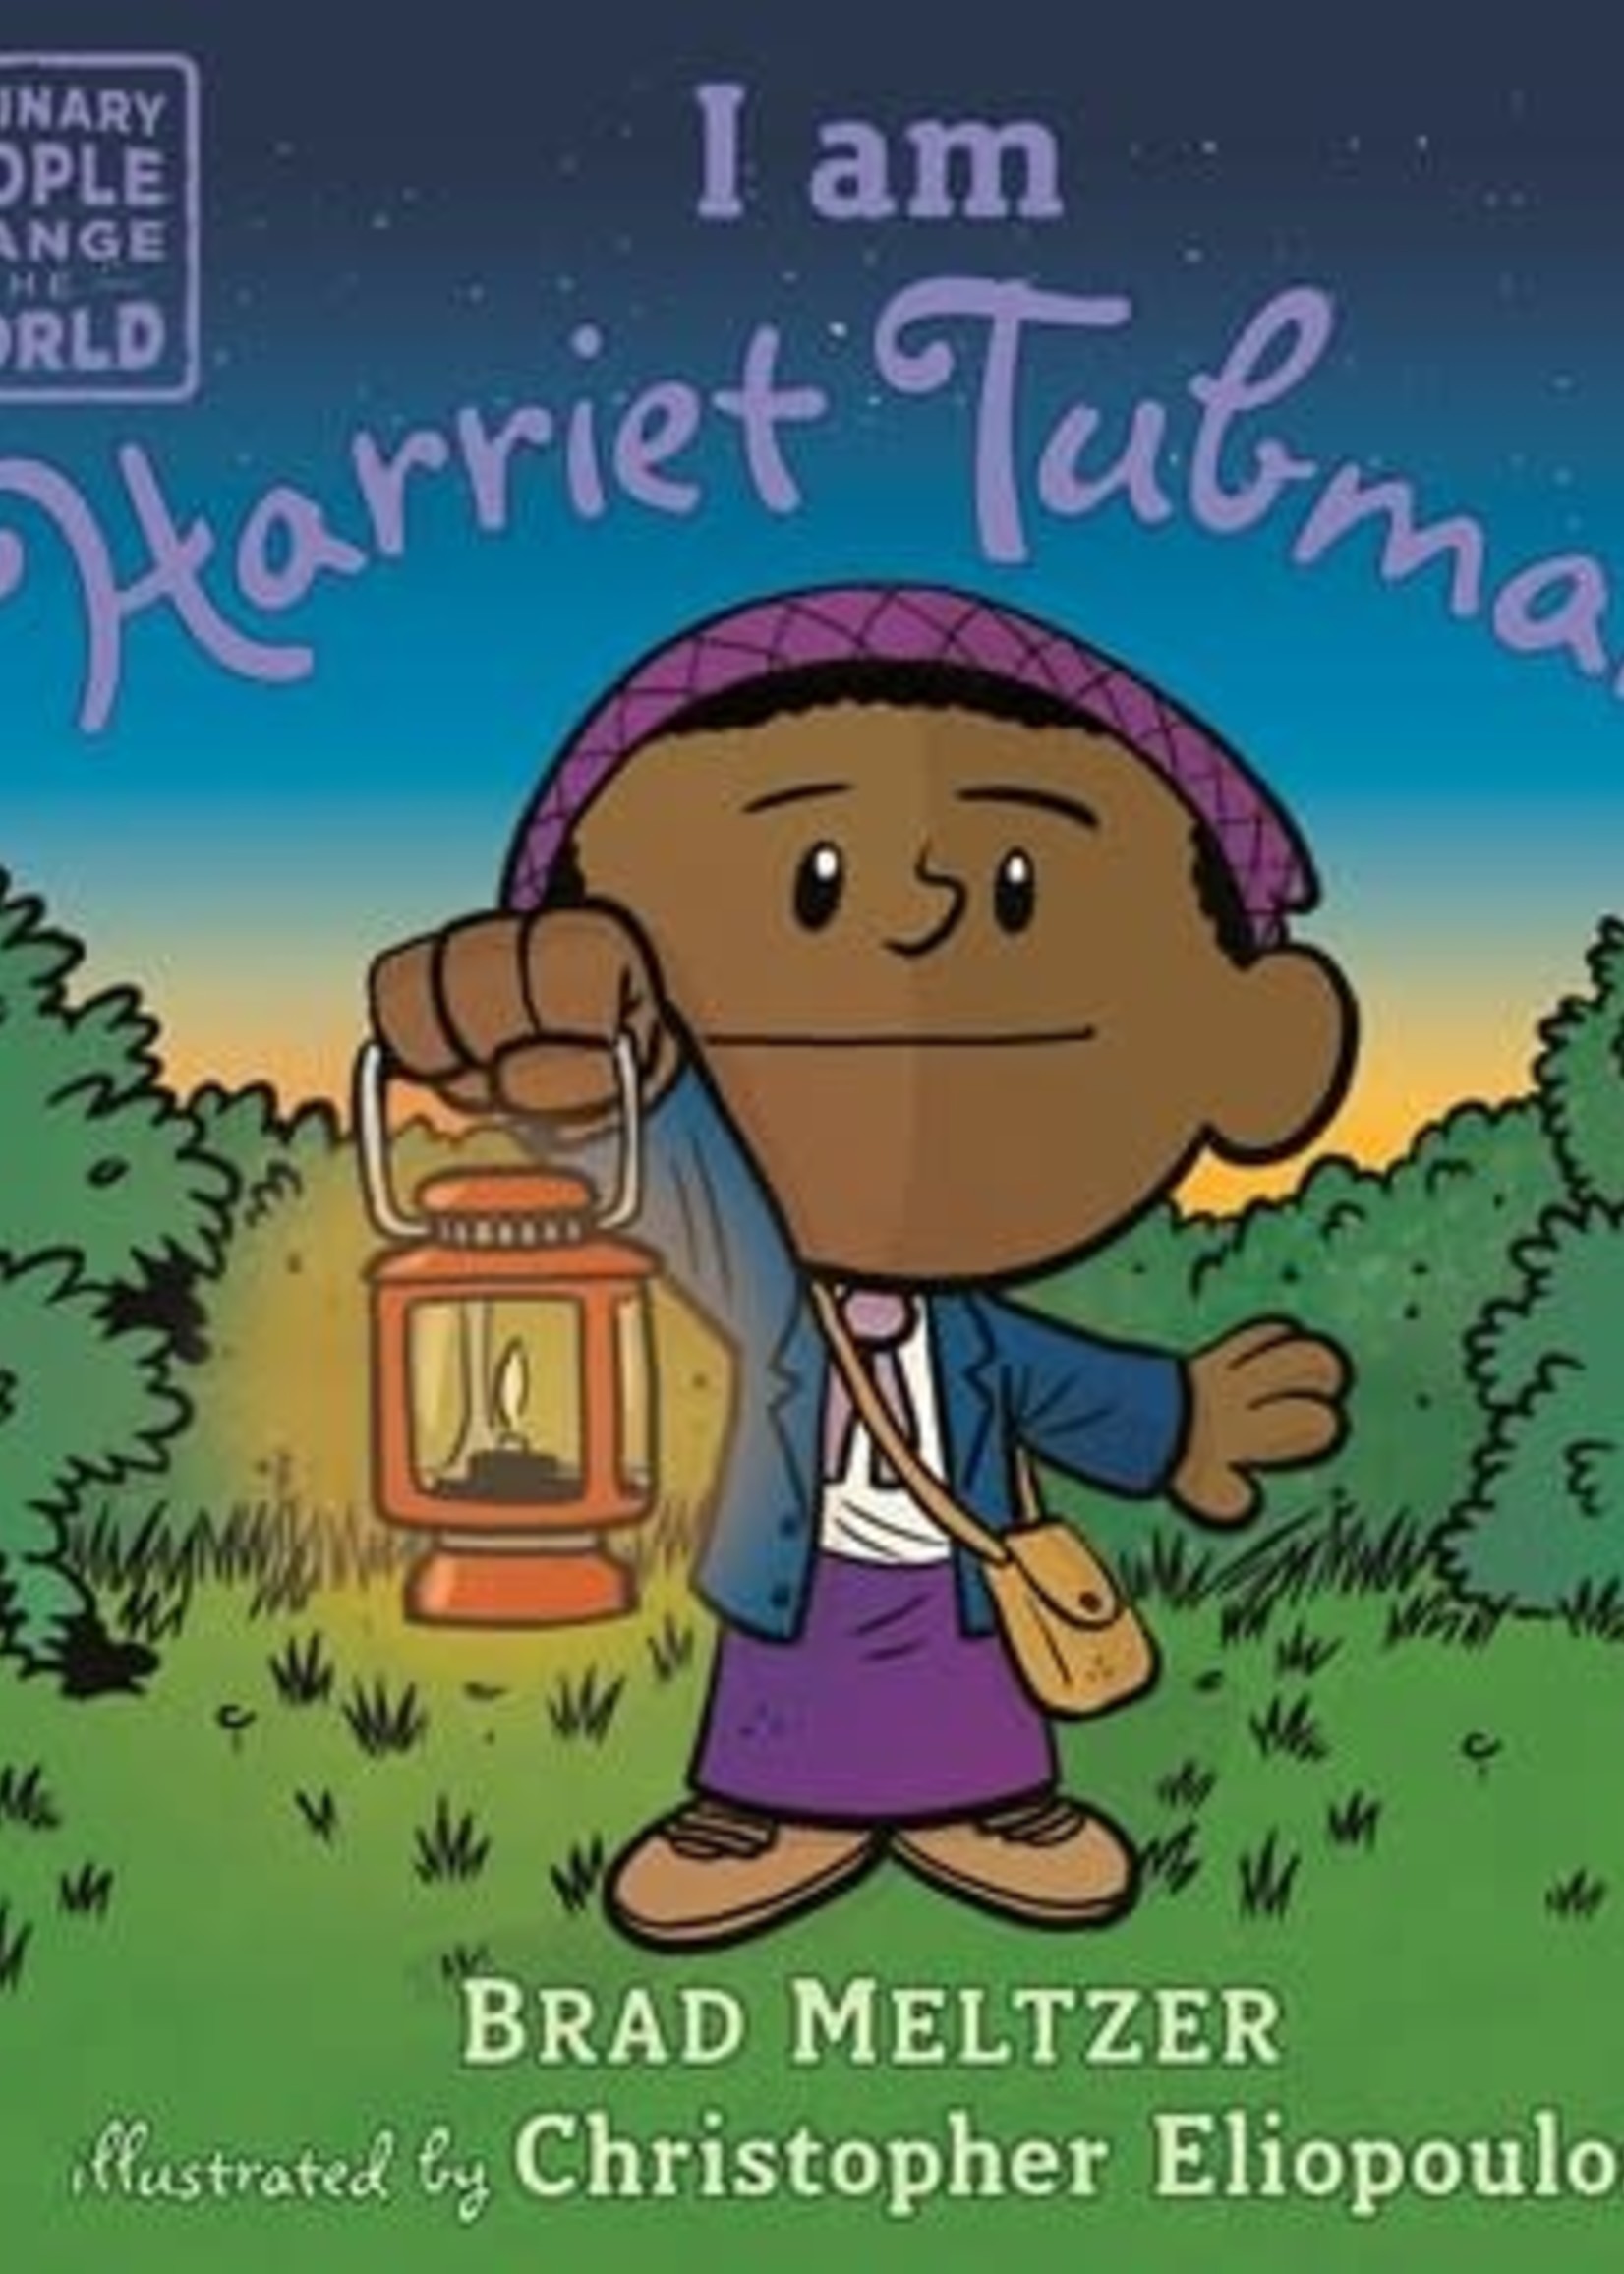 I am Harriet Tubman